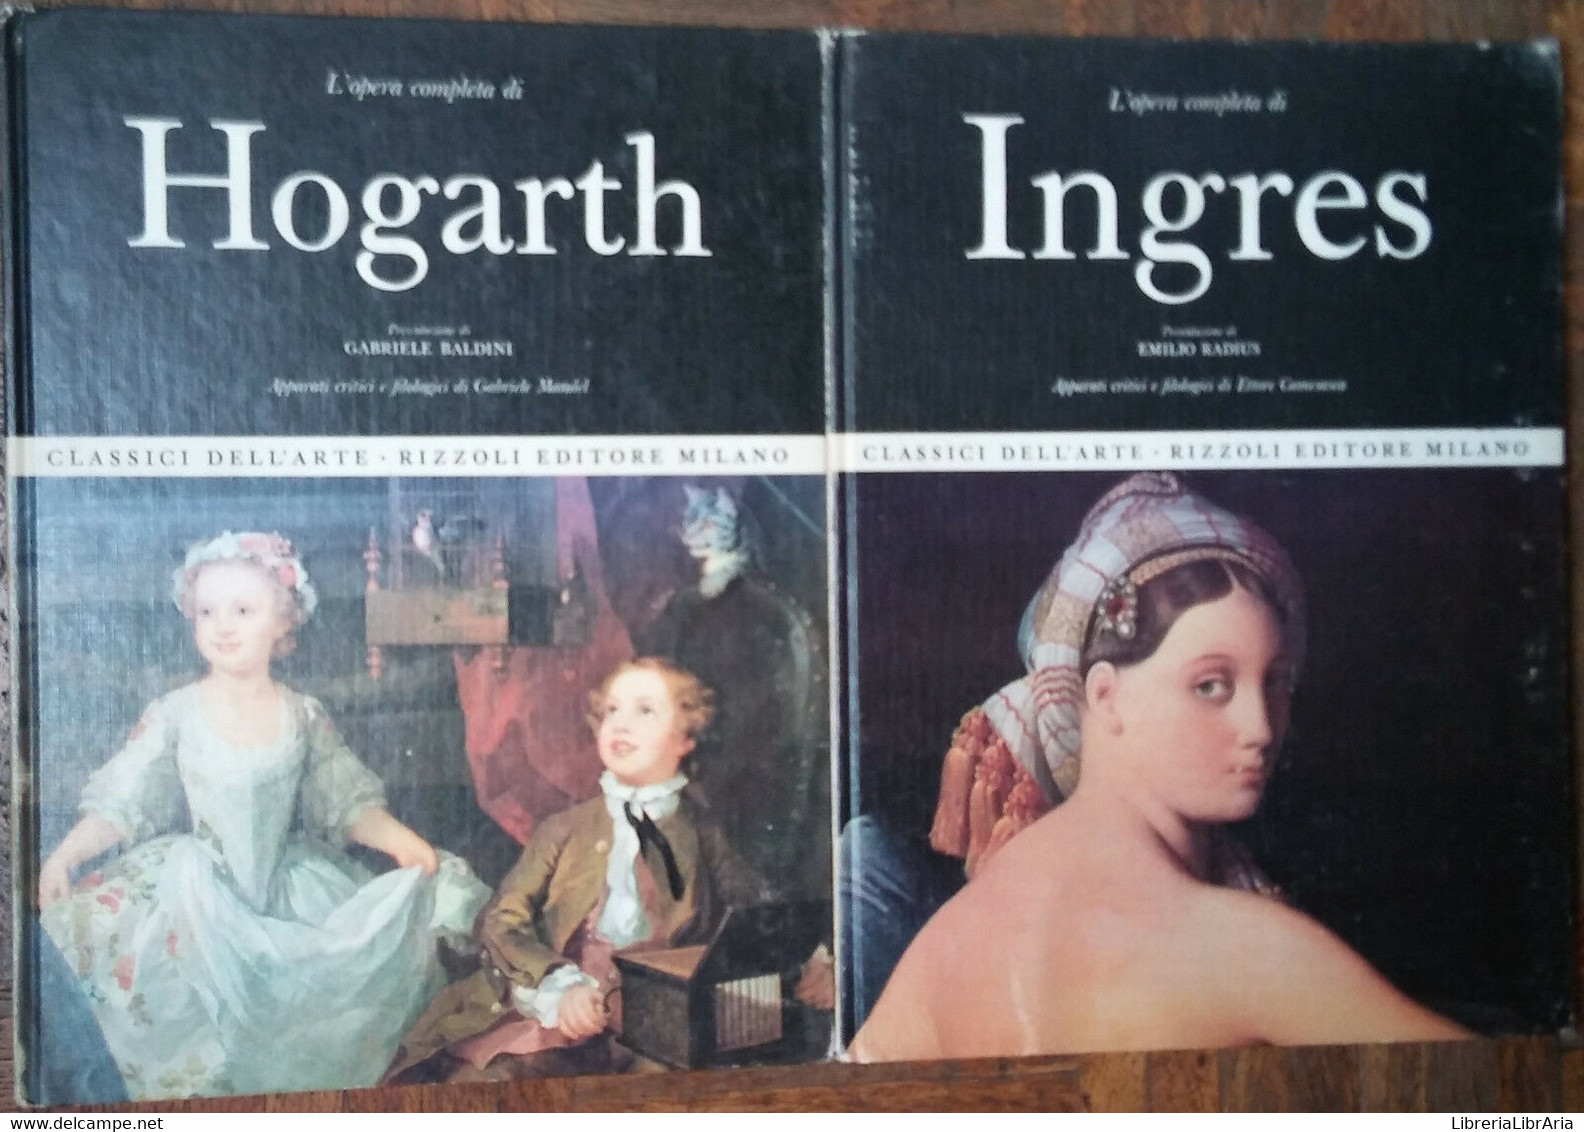 L’opera Completa Di Ingres;L’opera Completa Di Hogarth-AA.VV.-Rizzoli Editore-R - Kunst, Architectuur